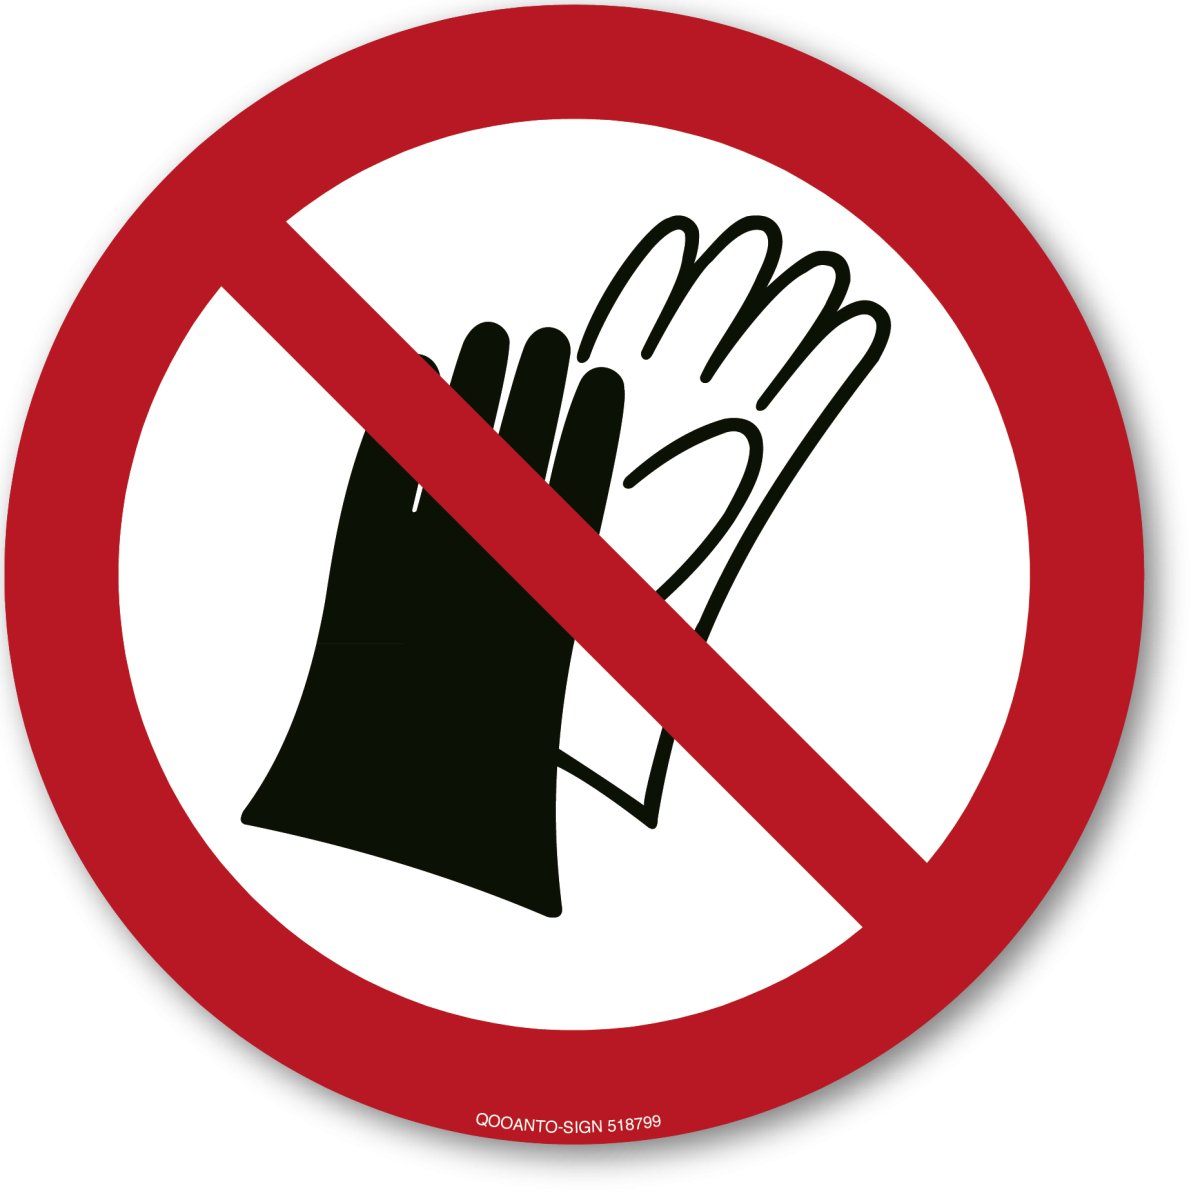 Benutzen Von Handschuhen Verboten, EN ISO 7010, P028 Verbotsschild oder Aufkleber aus Alu-Verbund oder Selbstklebefolie mit UV-Schutz - QOOANTO-SIGN